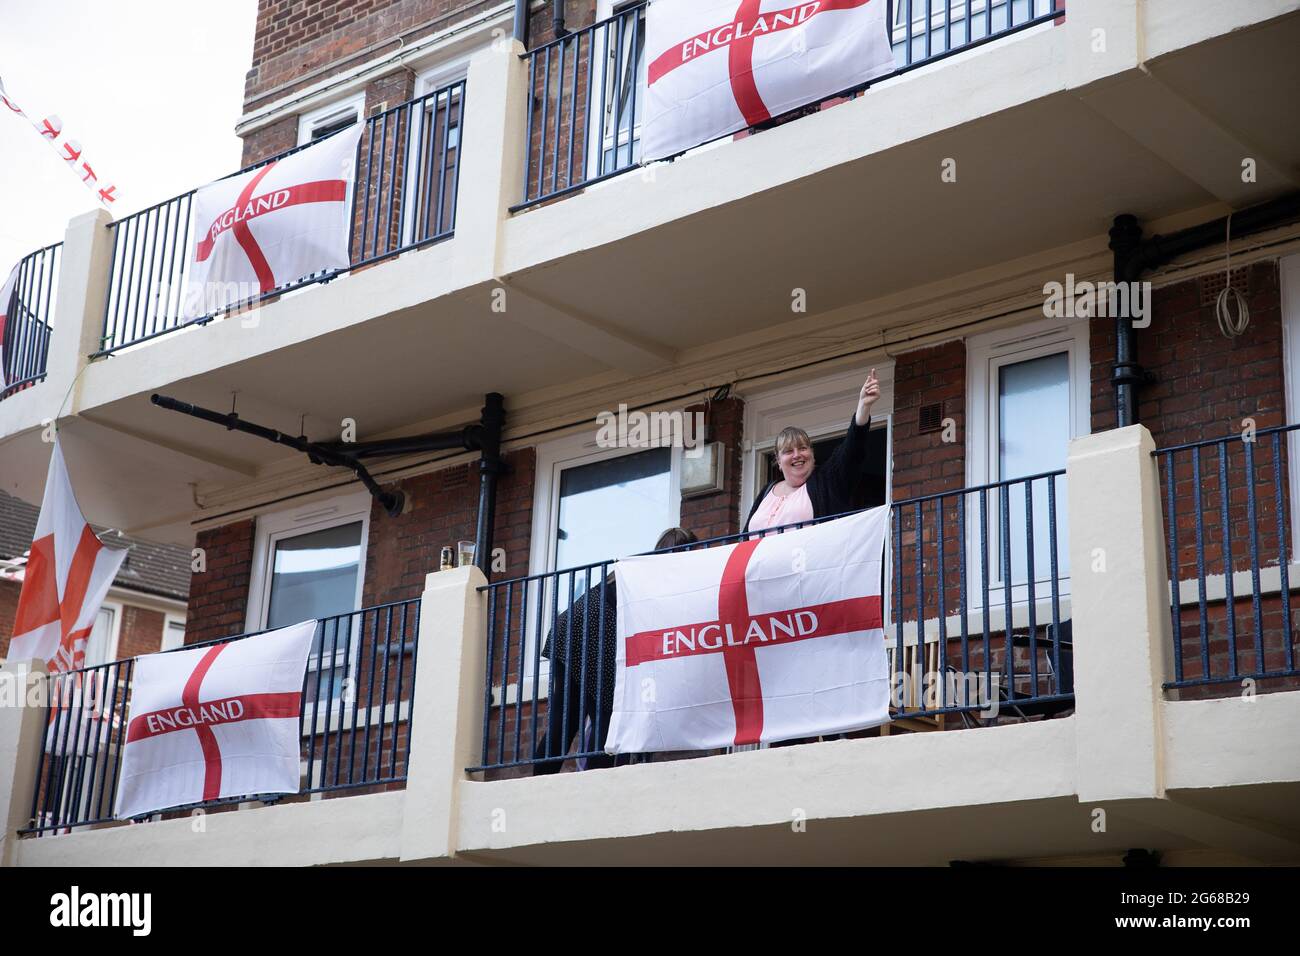 Autre résident vu sur le balcon et prêt à se joindre à regarder le match.UN fan de football, Chris Ralph Dewes, Organisé la décoration de plus de 400 drapeaux St George exposés dans le domaine Kirby dans le sud-est de Londres avec d'autres résidents avant le début du tournoi de l'UEFA Euro 2020. La tradition de la propriété de mettre des centaines de drapeaux de St George a été depuis l'Euro 2012 et chaque fois les résidents ont réussi à placer plus de drapeaux dans la propriété. Au cours de chaque match de l'équipe d'Angleterre, Chris sera l'hôte et invitera d'autres résidents à se joindre à l'observation. Il a dit que tous les drapeaux resteraient Banque D'Images